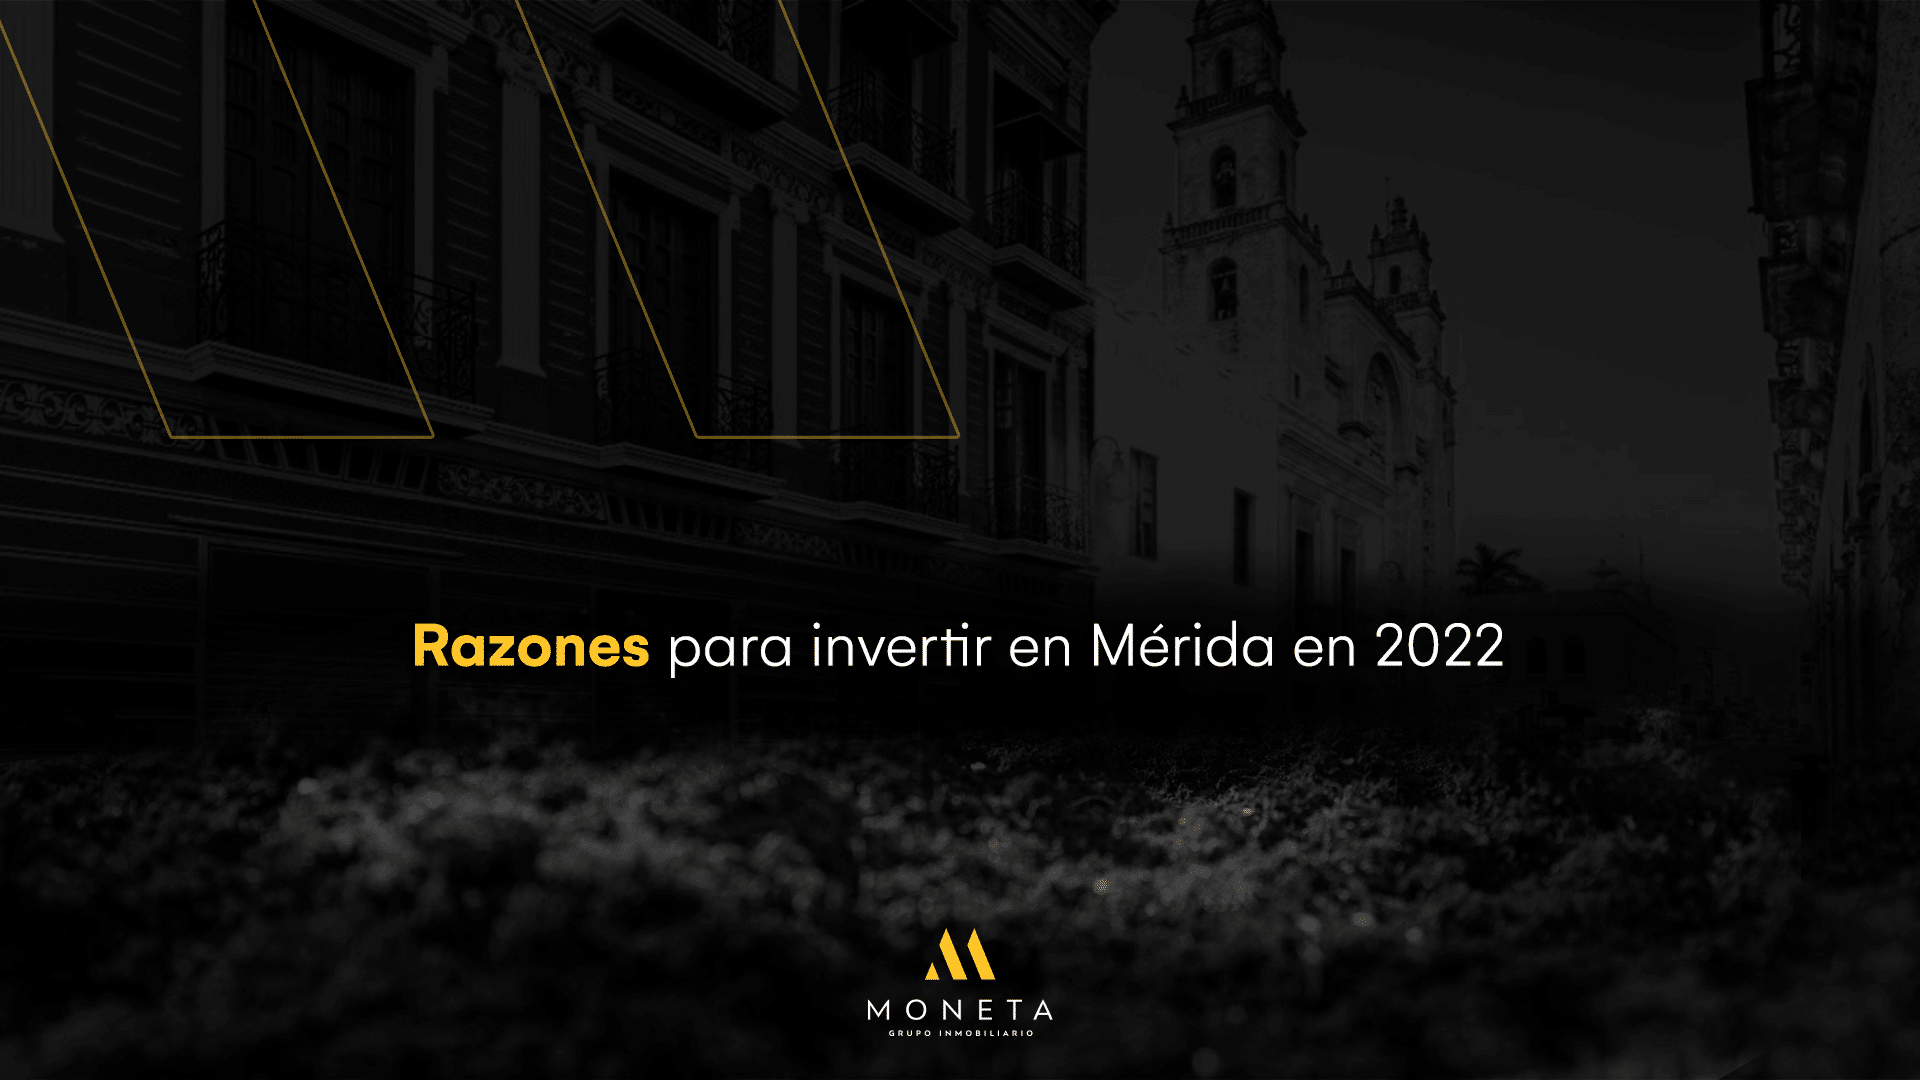 Razones para invertir en Mérida este 2022